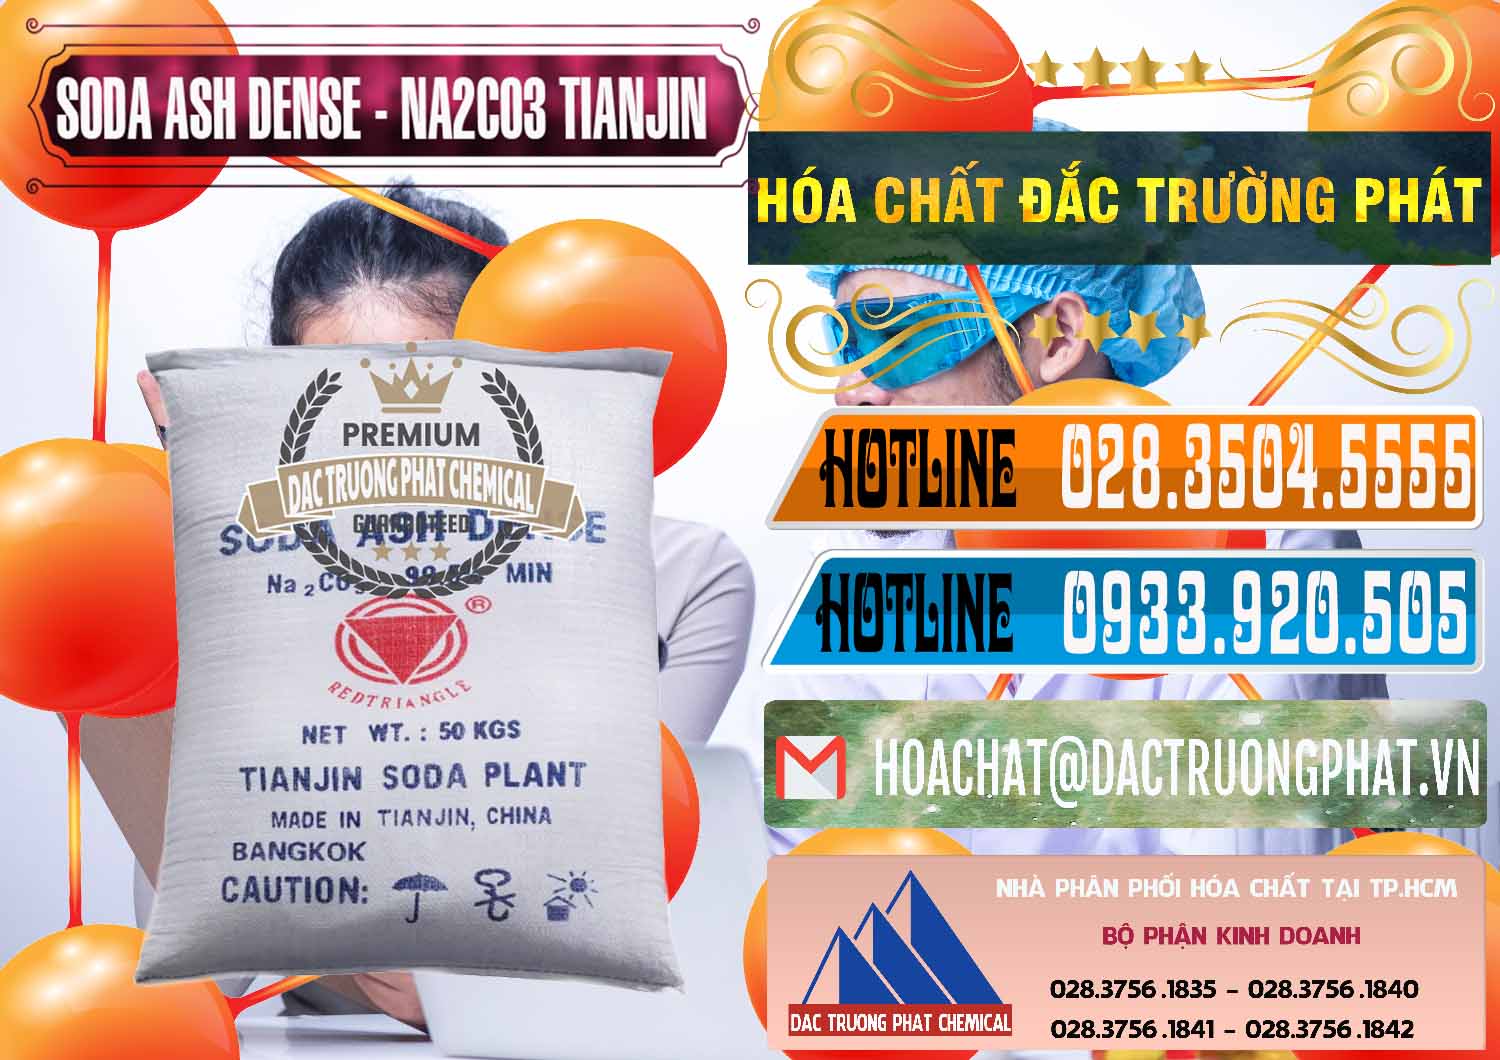 Cty nhập khẩu & bán Soda Ash Dense - NA2CO3 Tianjin Trung Quốc China - 0336 - Cty chuyên kinh doanh _ cung cấp hóa chất tại TP.HCM - stmp.net